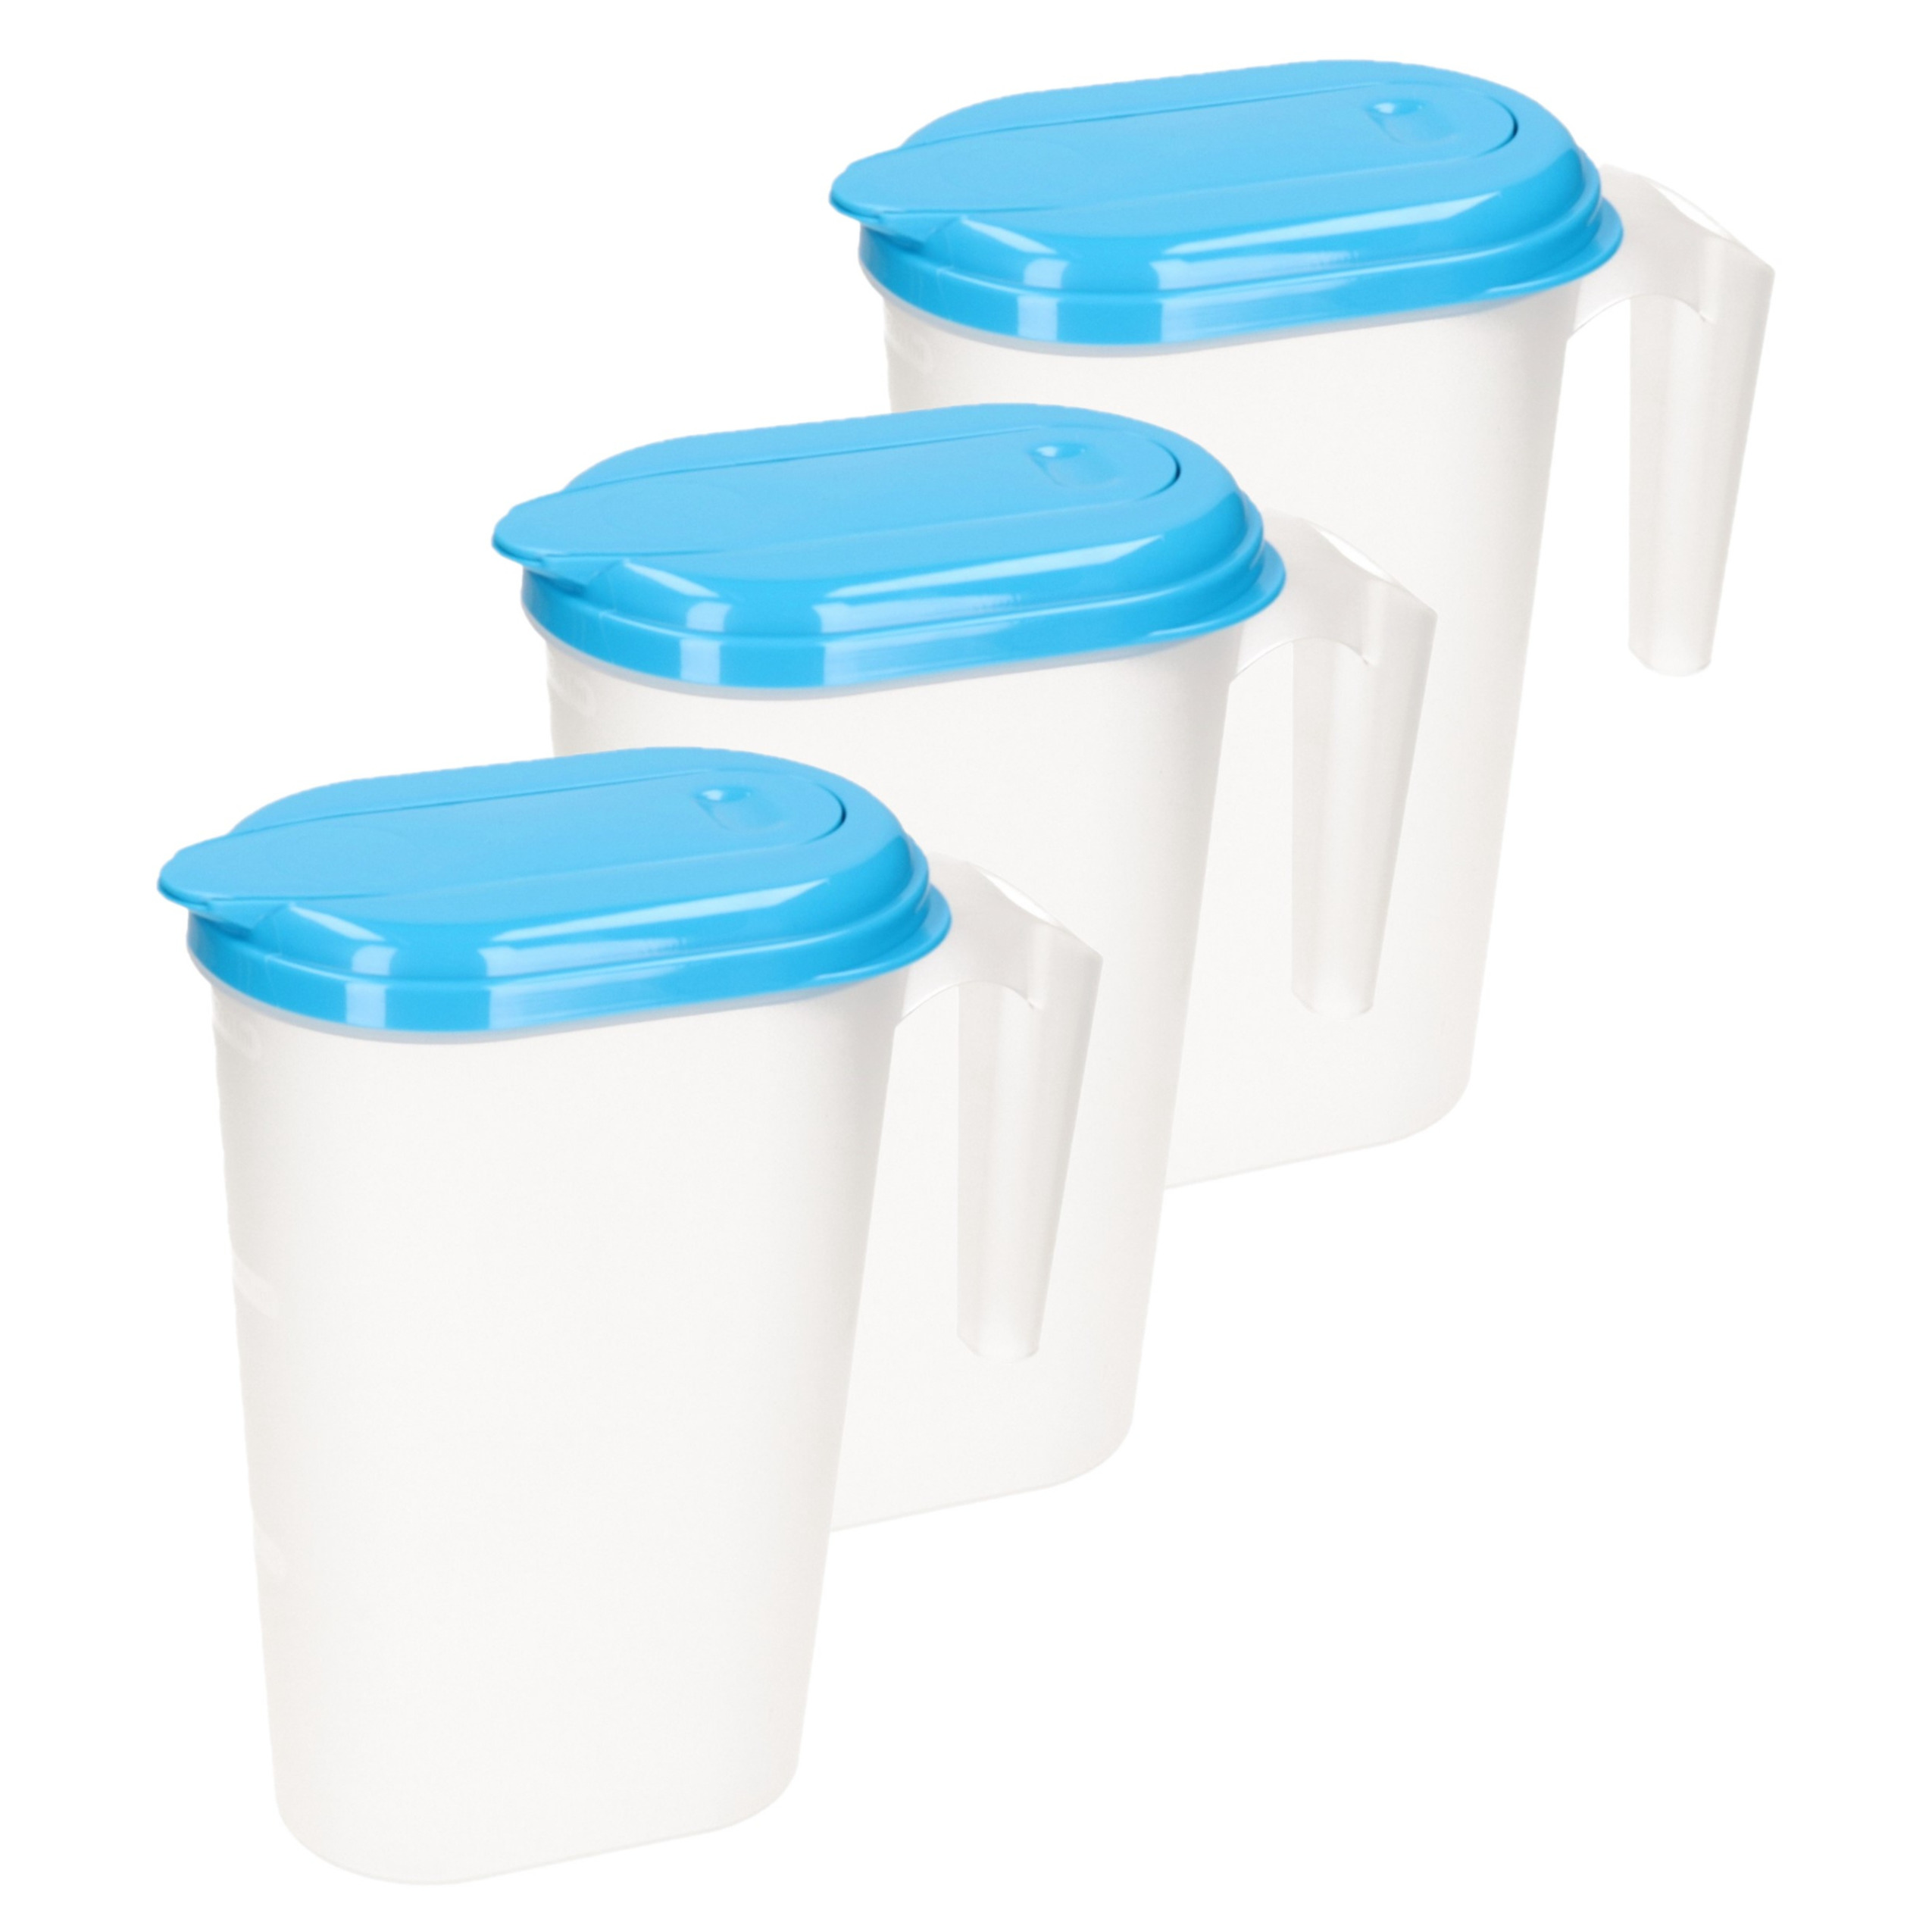 PlasticForte 3x stuks waterkan/sapkan transparant/blauw met deksel 1.6 liter kunststof -